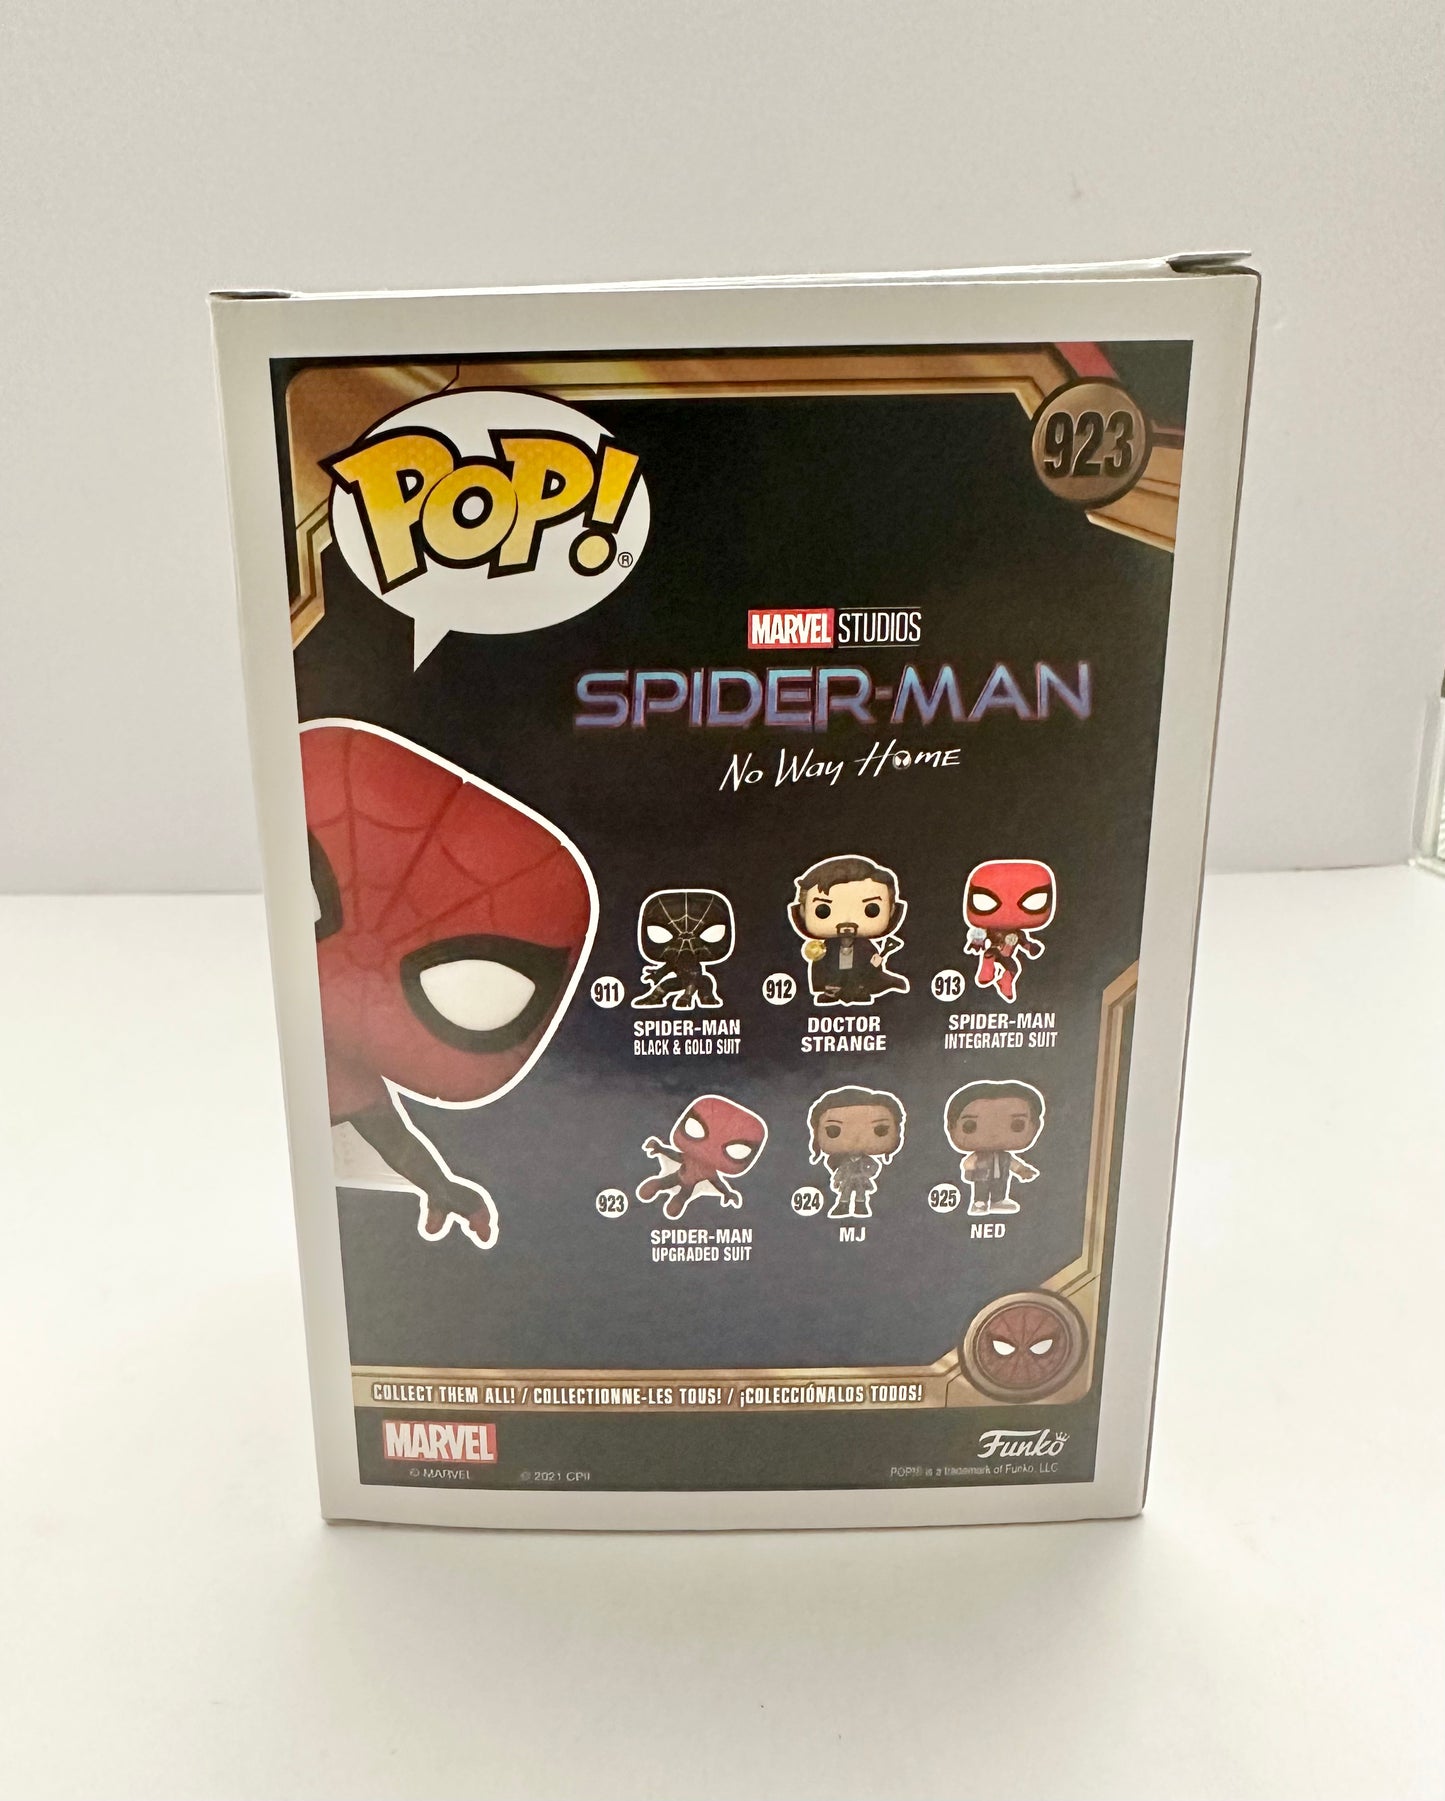 Funko Pop! Spider-Man No Way Home Spider-Man Upgraded Suit - 923